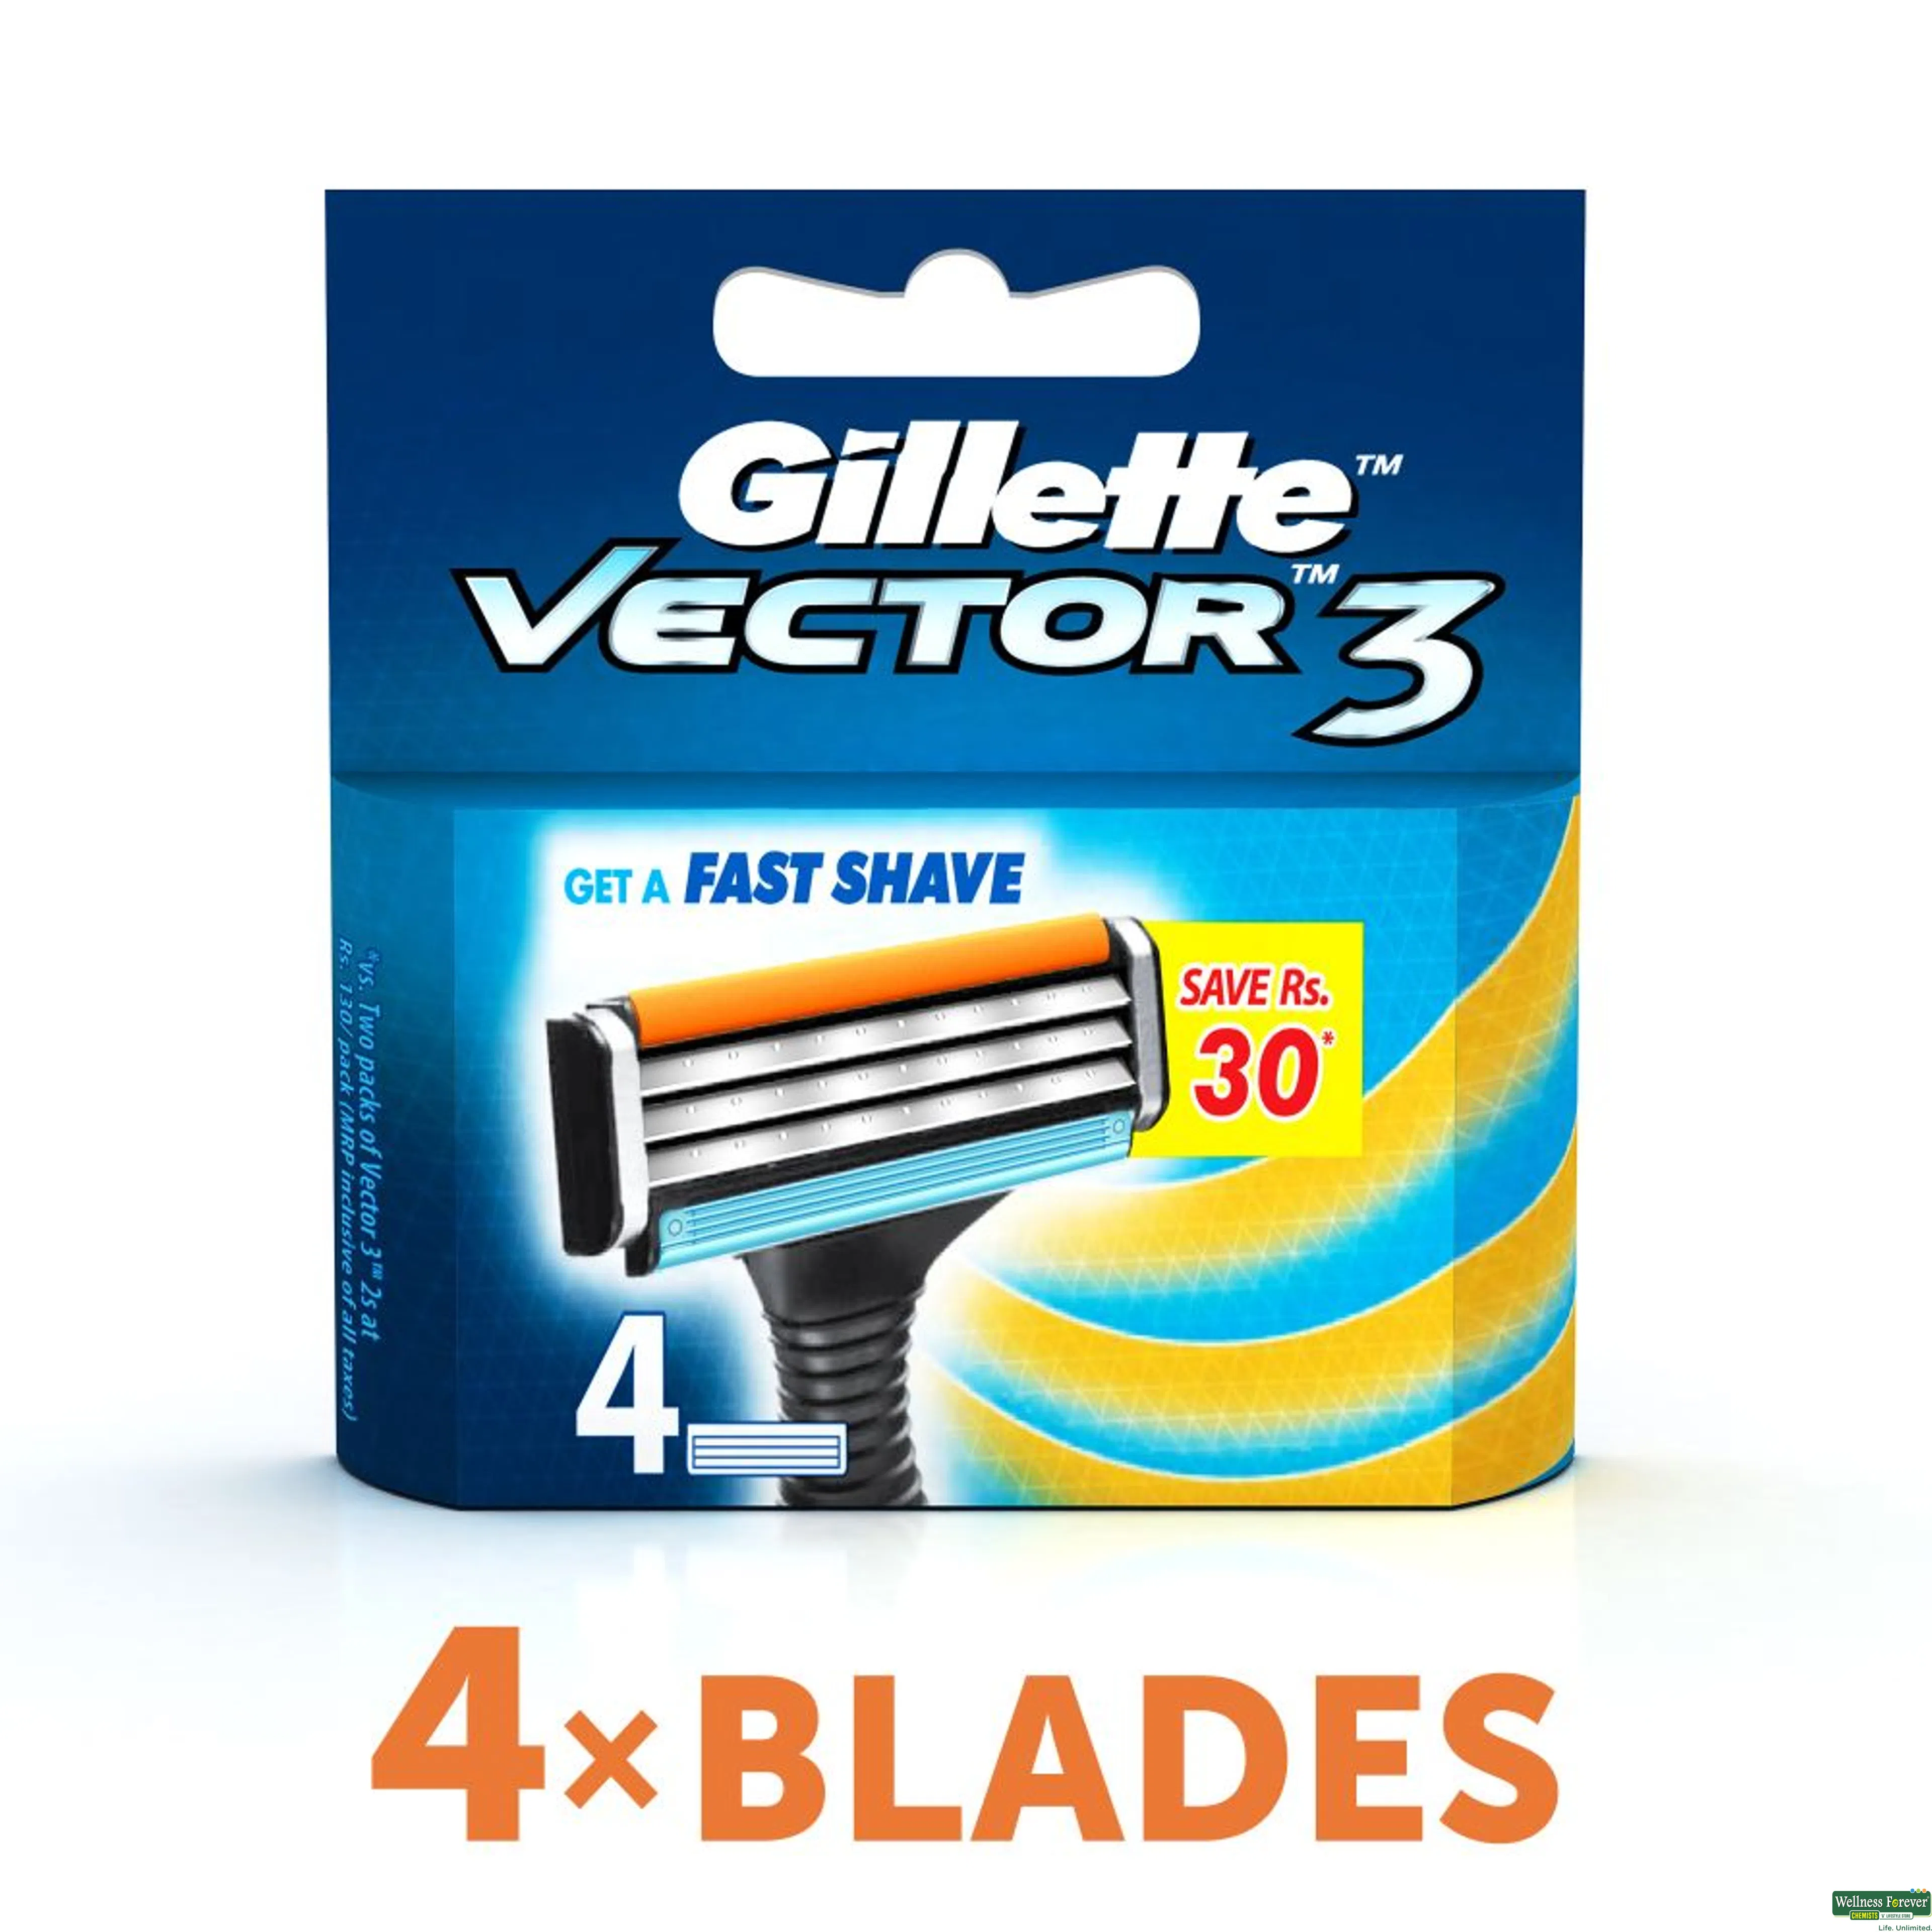 GILL SH/BLADE VECTOR3 4PC-image